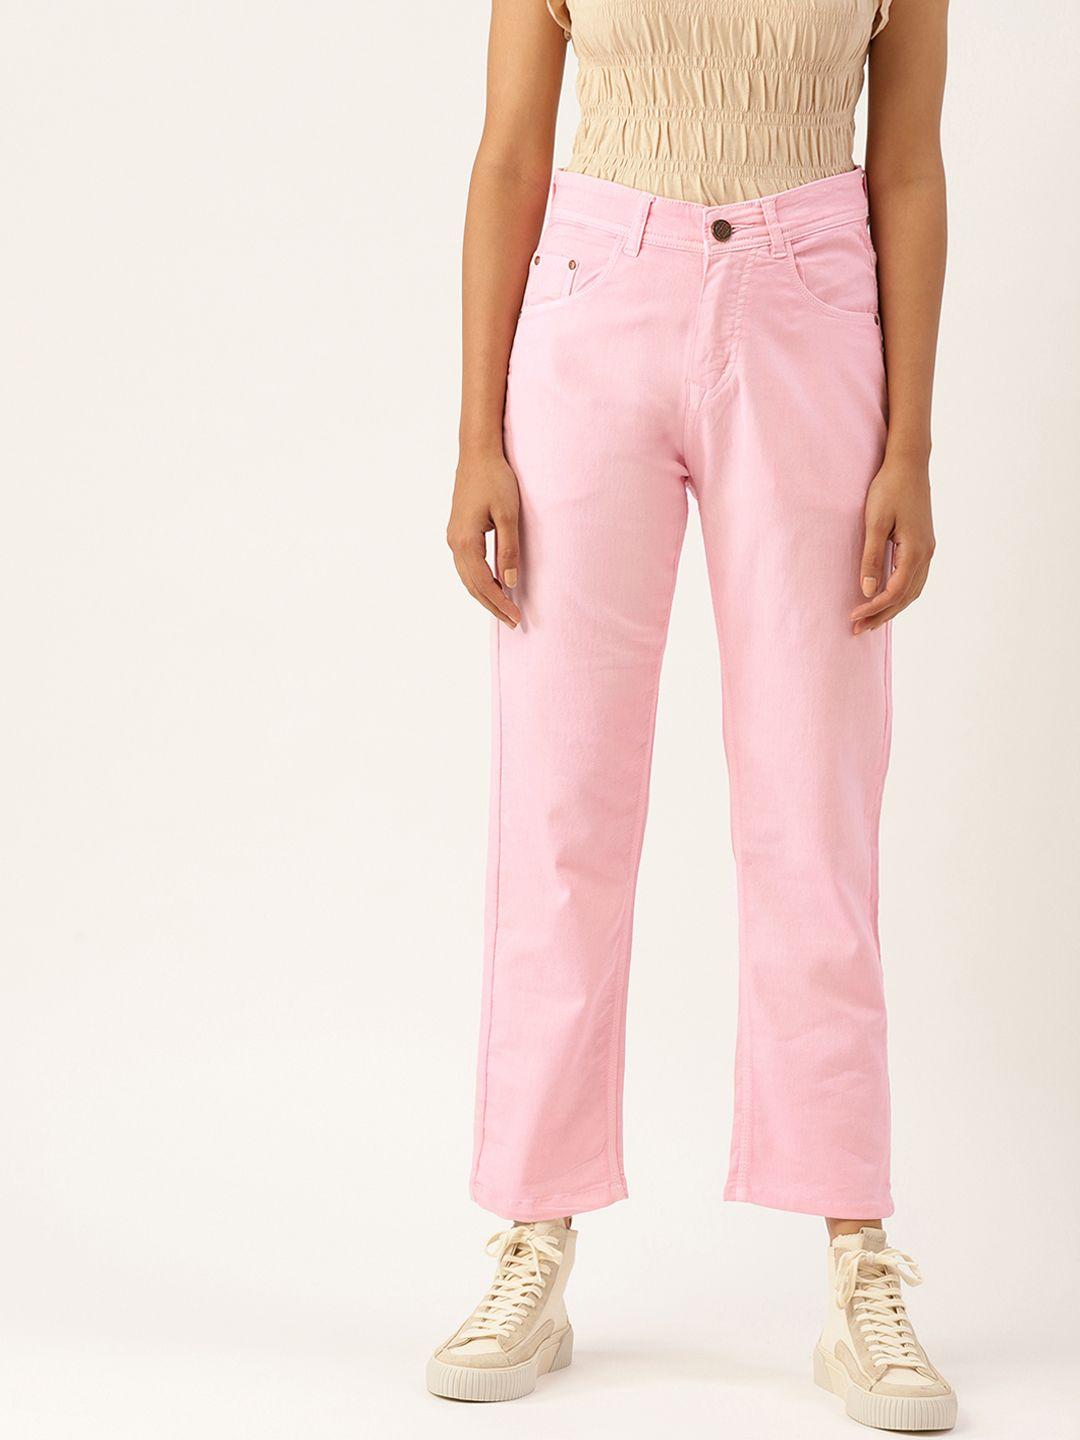 PARIS HAMILTON Women Pink Boyfriend Fit High-Rise Stretchable Jeans